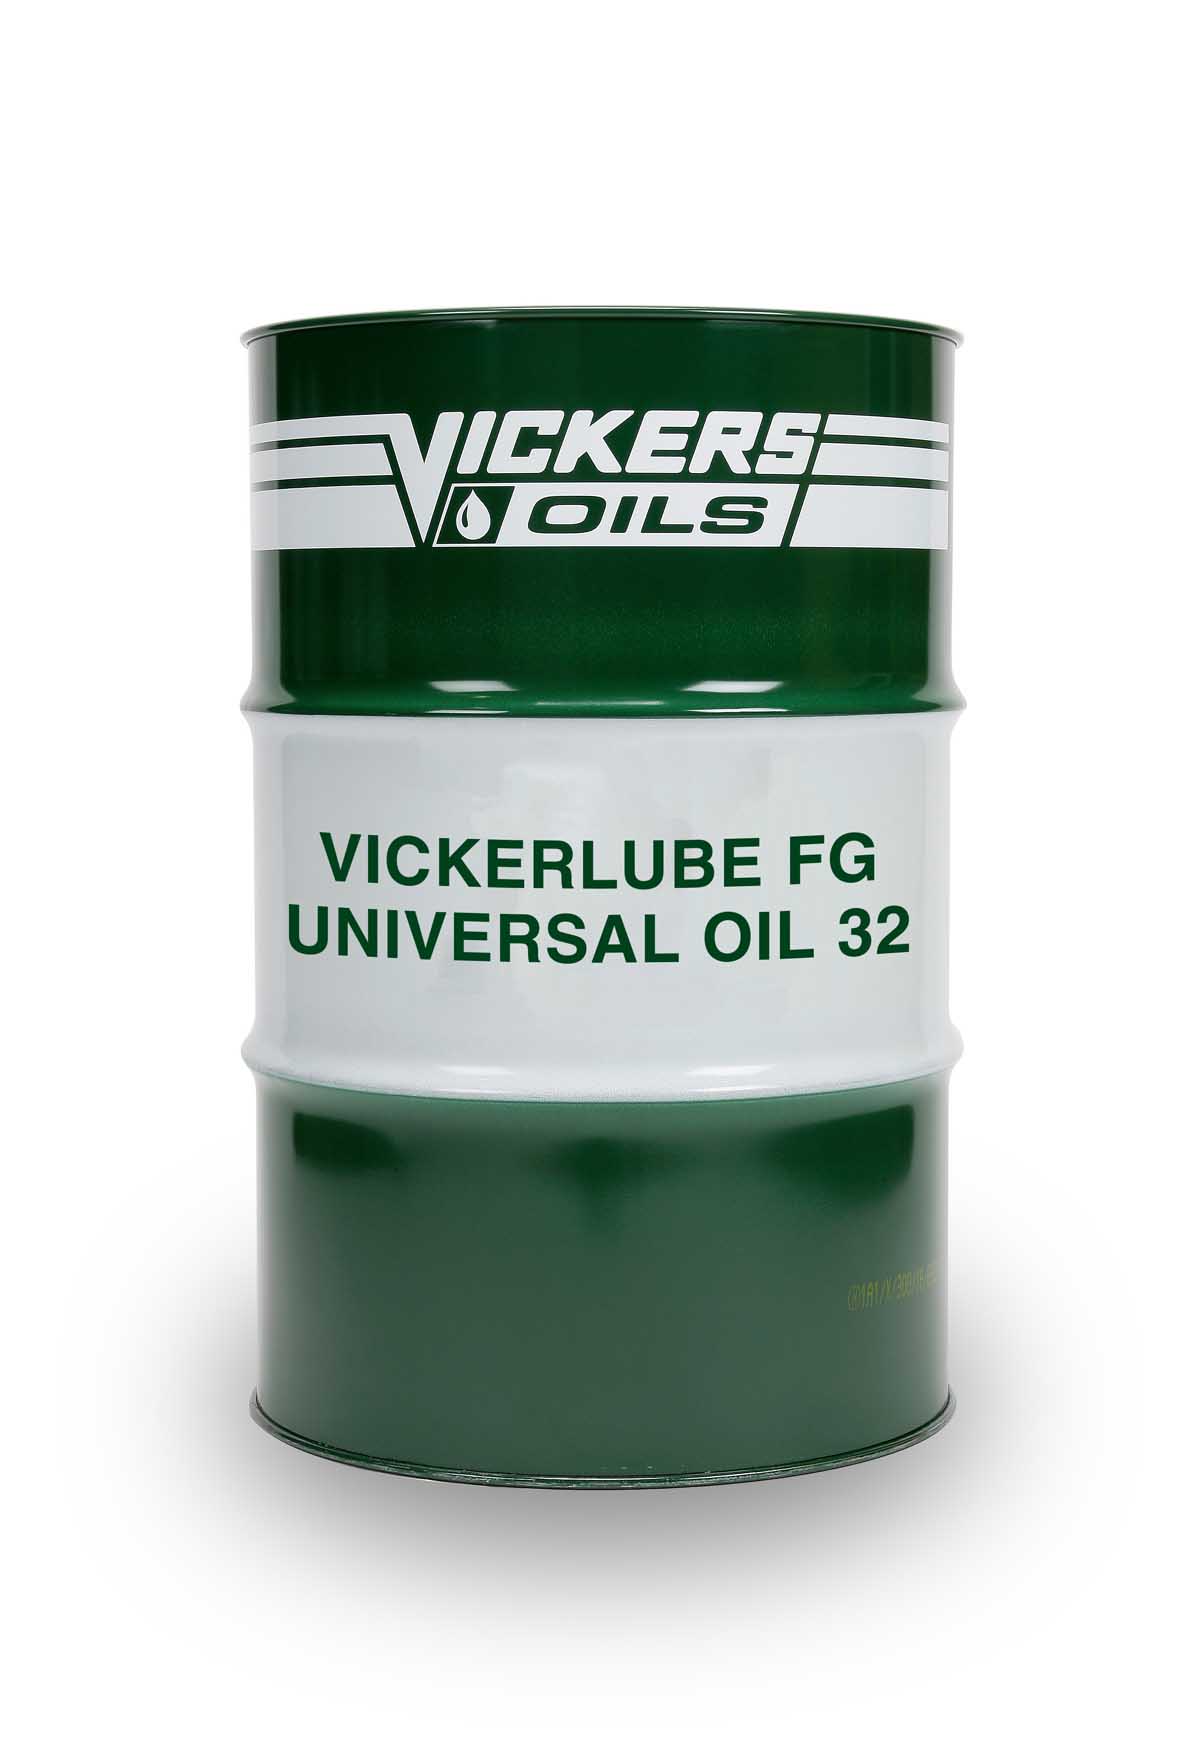 VICKERLUBE FG UNIVERSAL OIL 32 - Vickers Oils